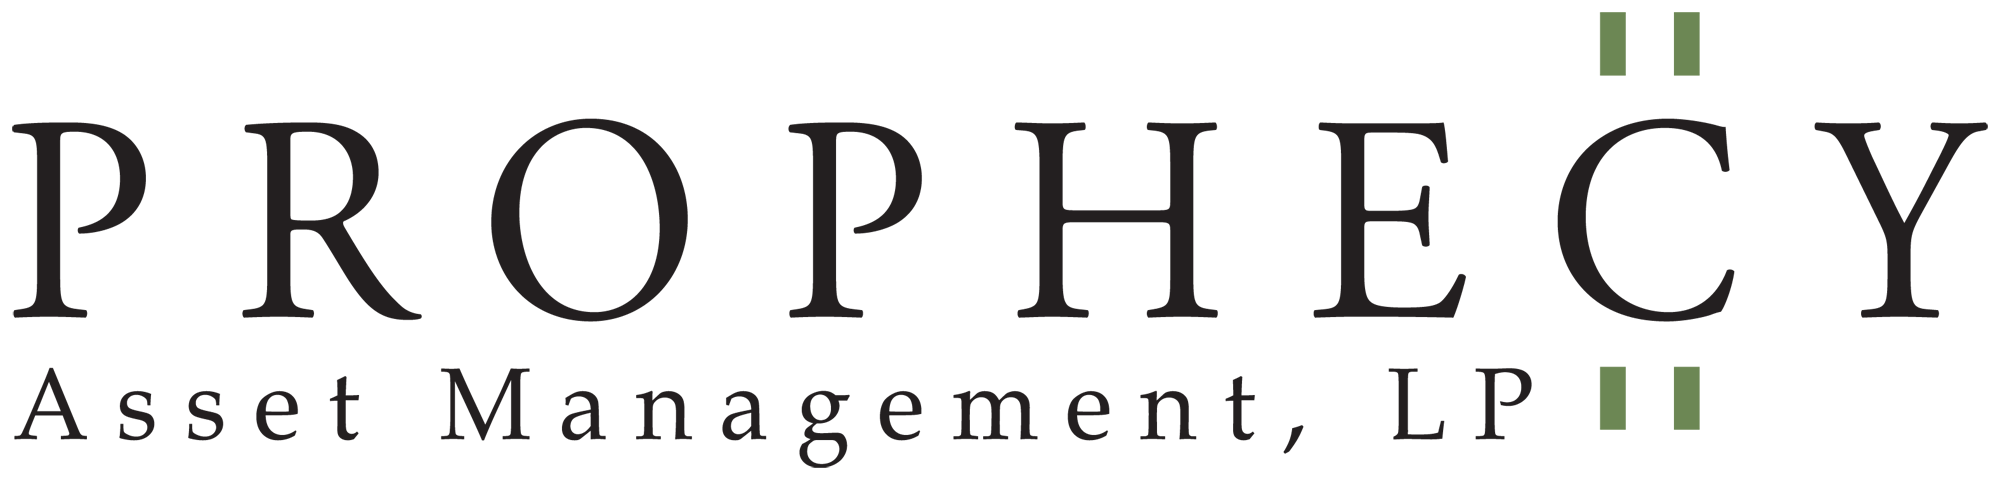 Prophecy Asset Management, LP logo